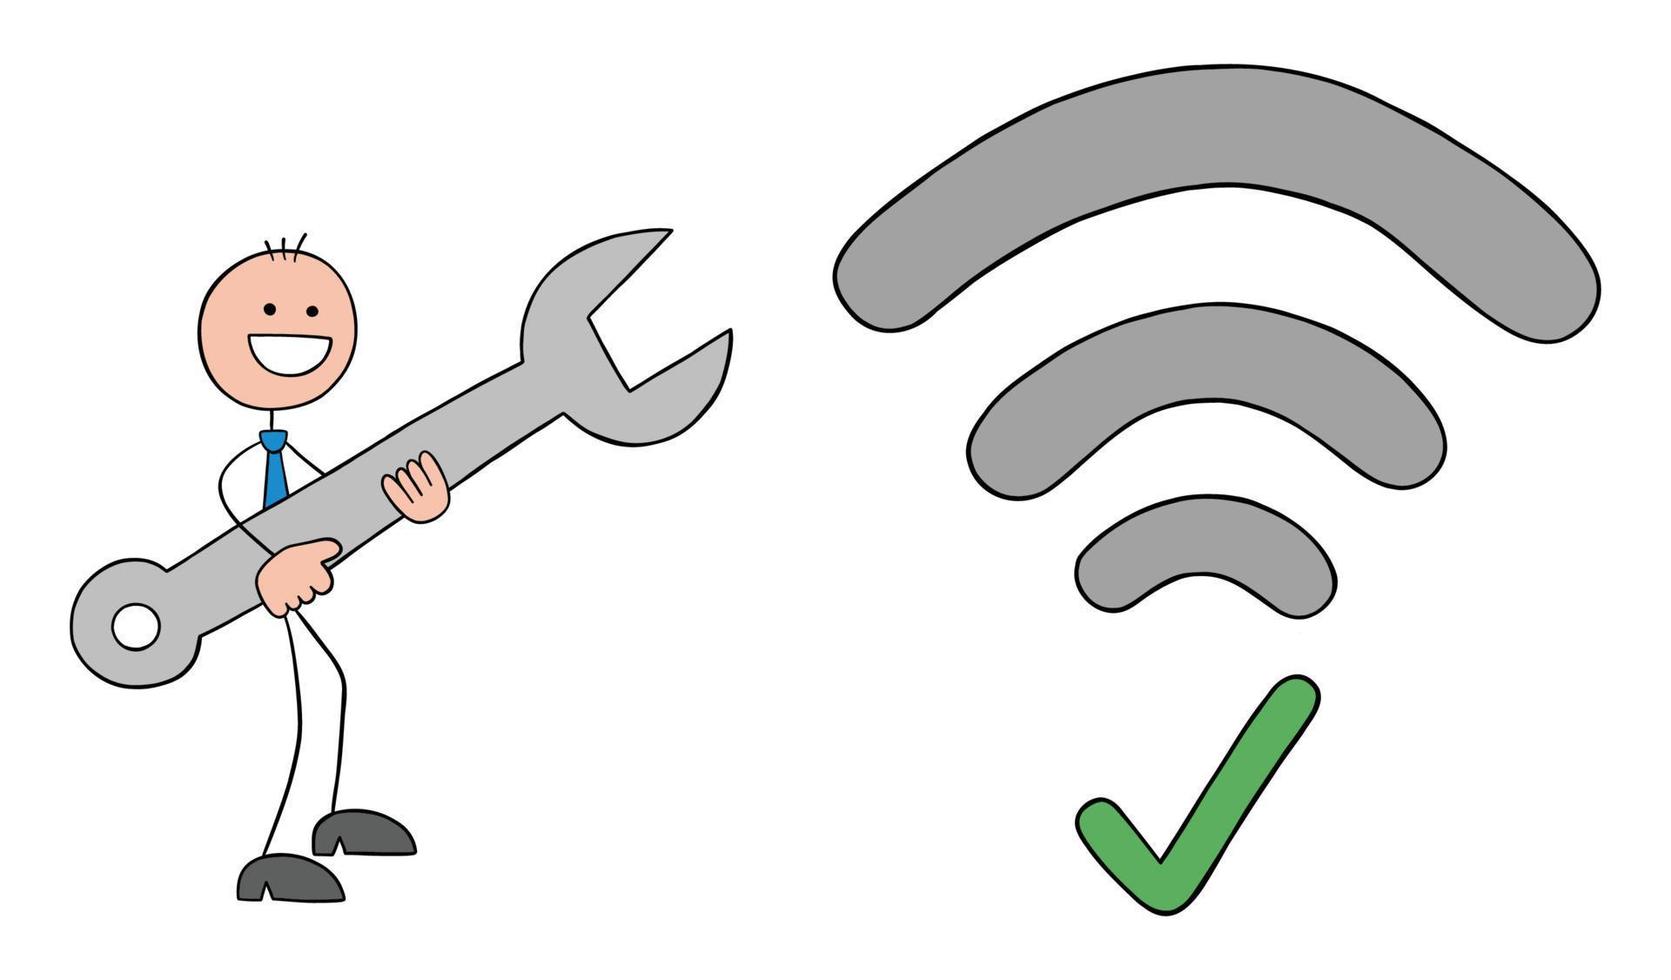 L'uomo d'affari stickman ha una chiave inglese e un errore del segnale wifi fisso, illustrazione vettoriale del fumetto del profilo disegnato a mano